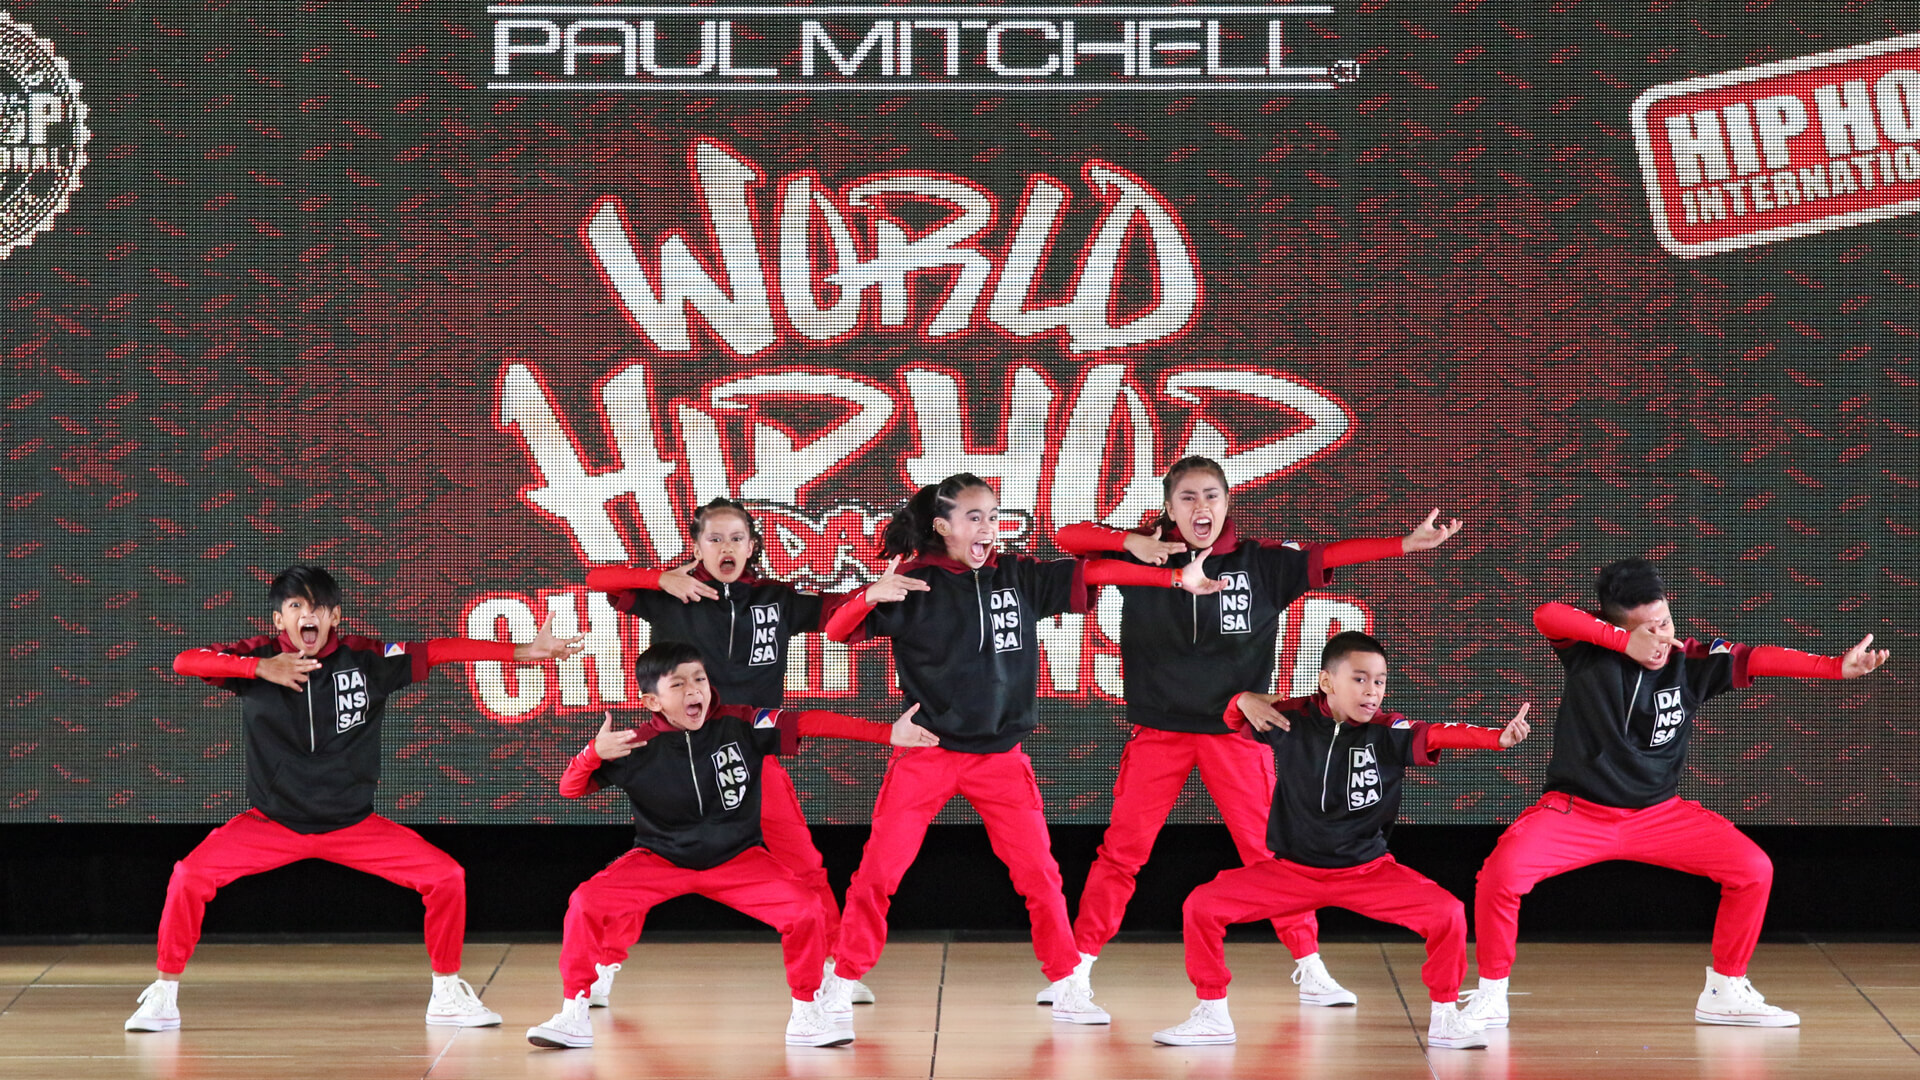 World Hip Hop Dance Championship 2019 - HD Wallpaper 